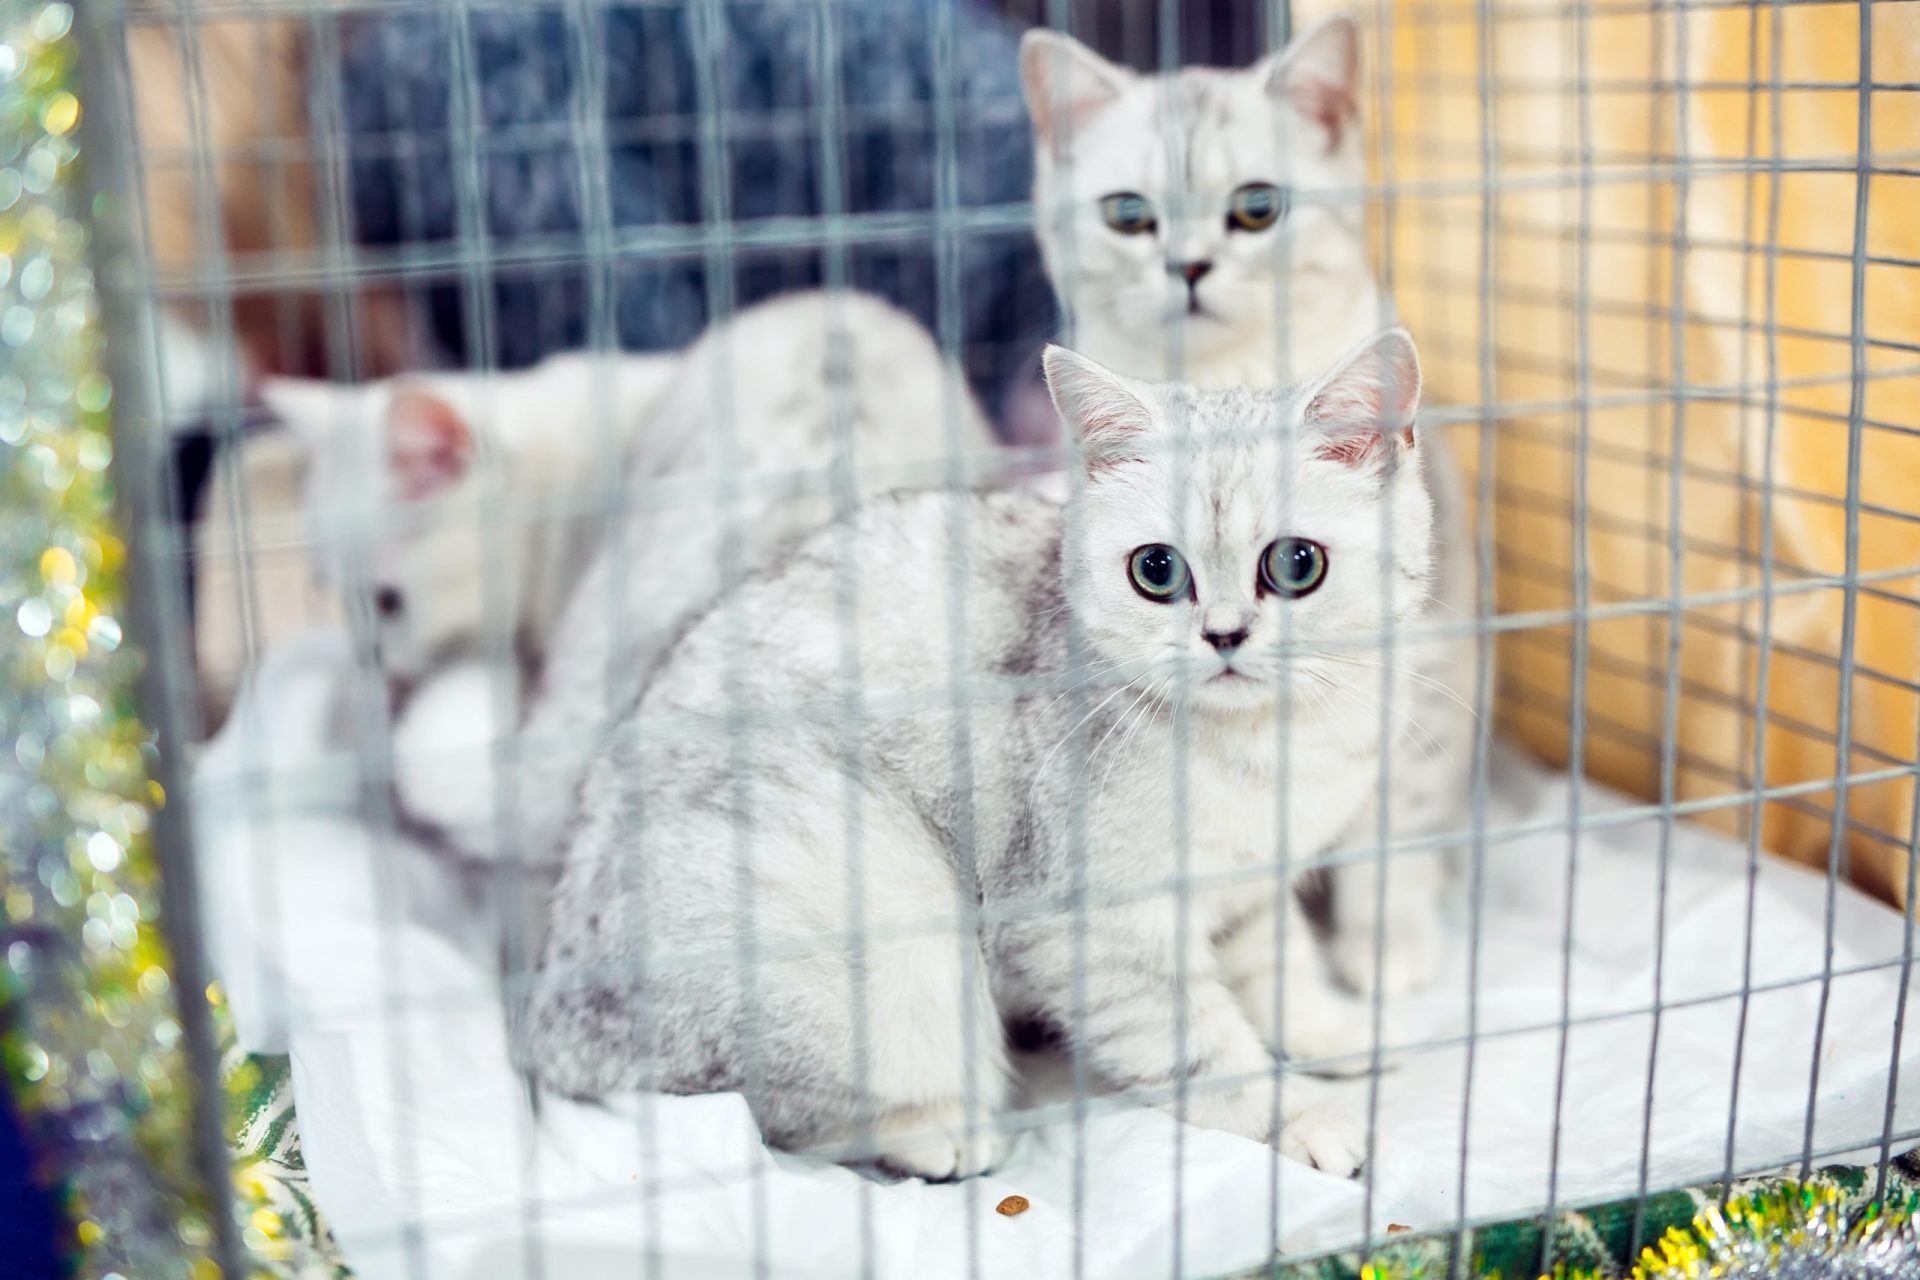 Resgatados quase 150 gatos destinados ao consumo humano na China